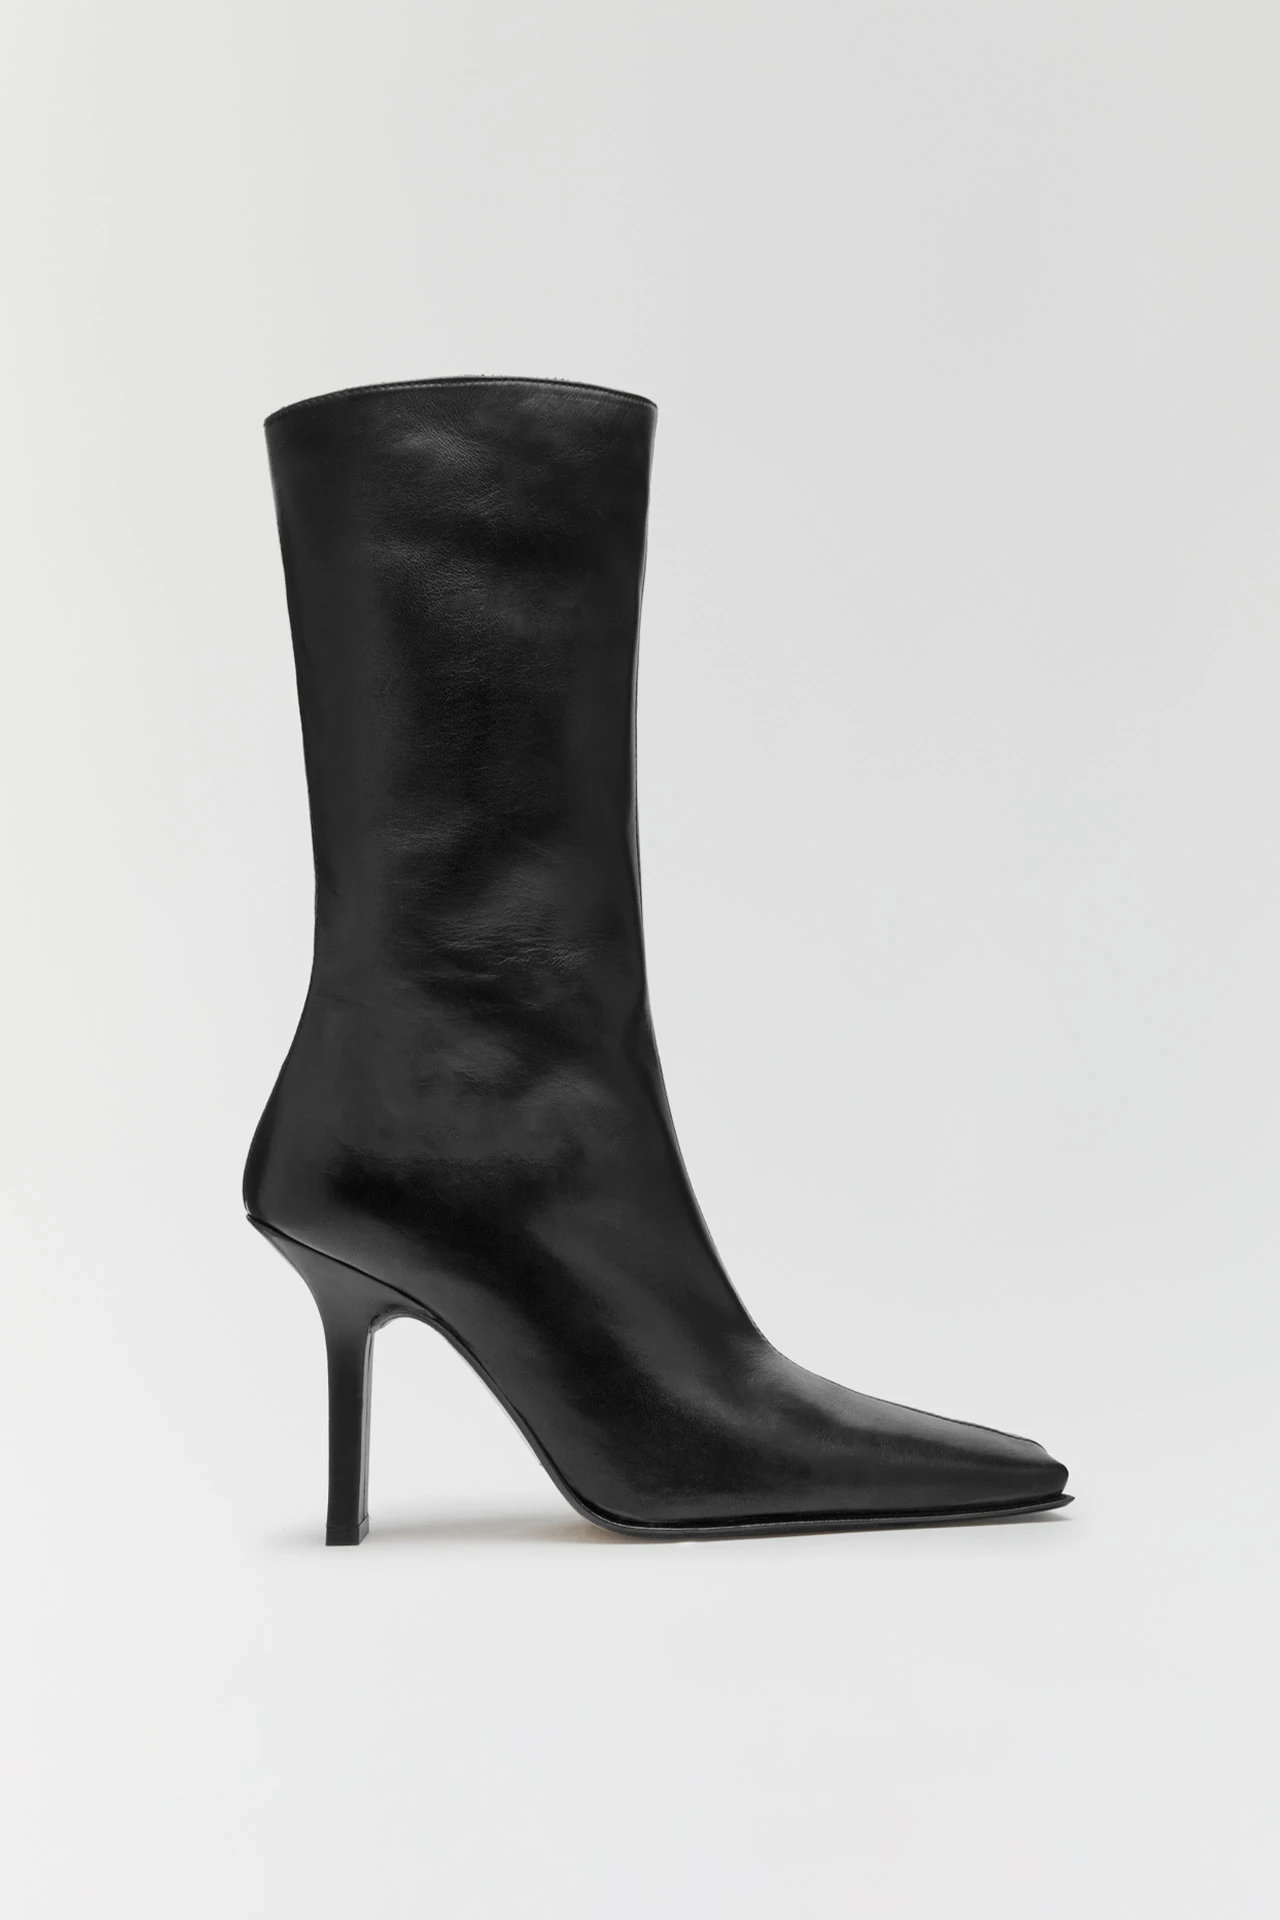 miista-noor-black-boots-1